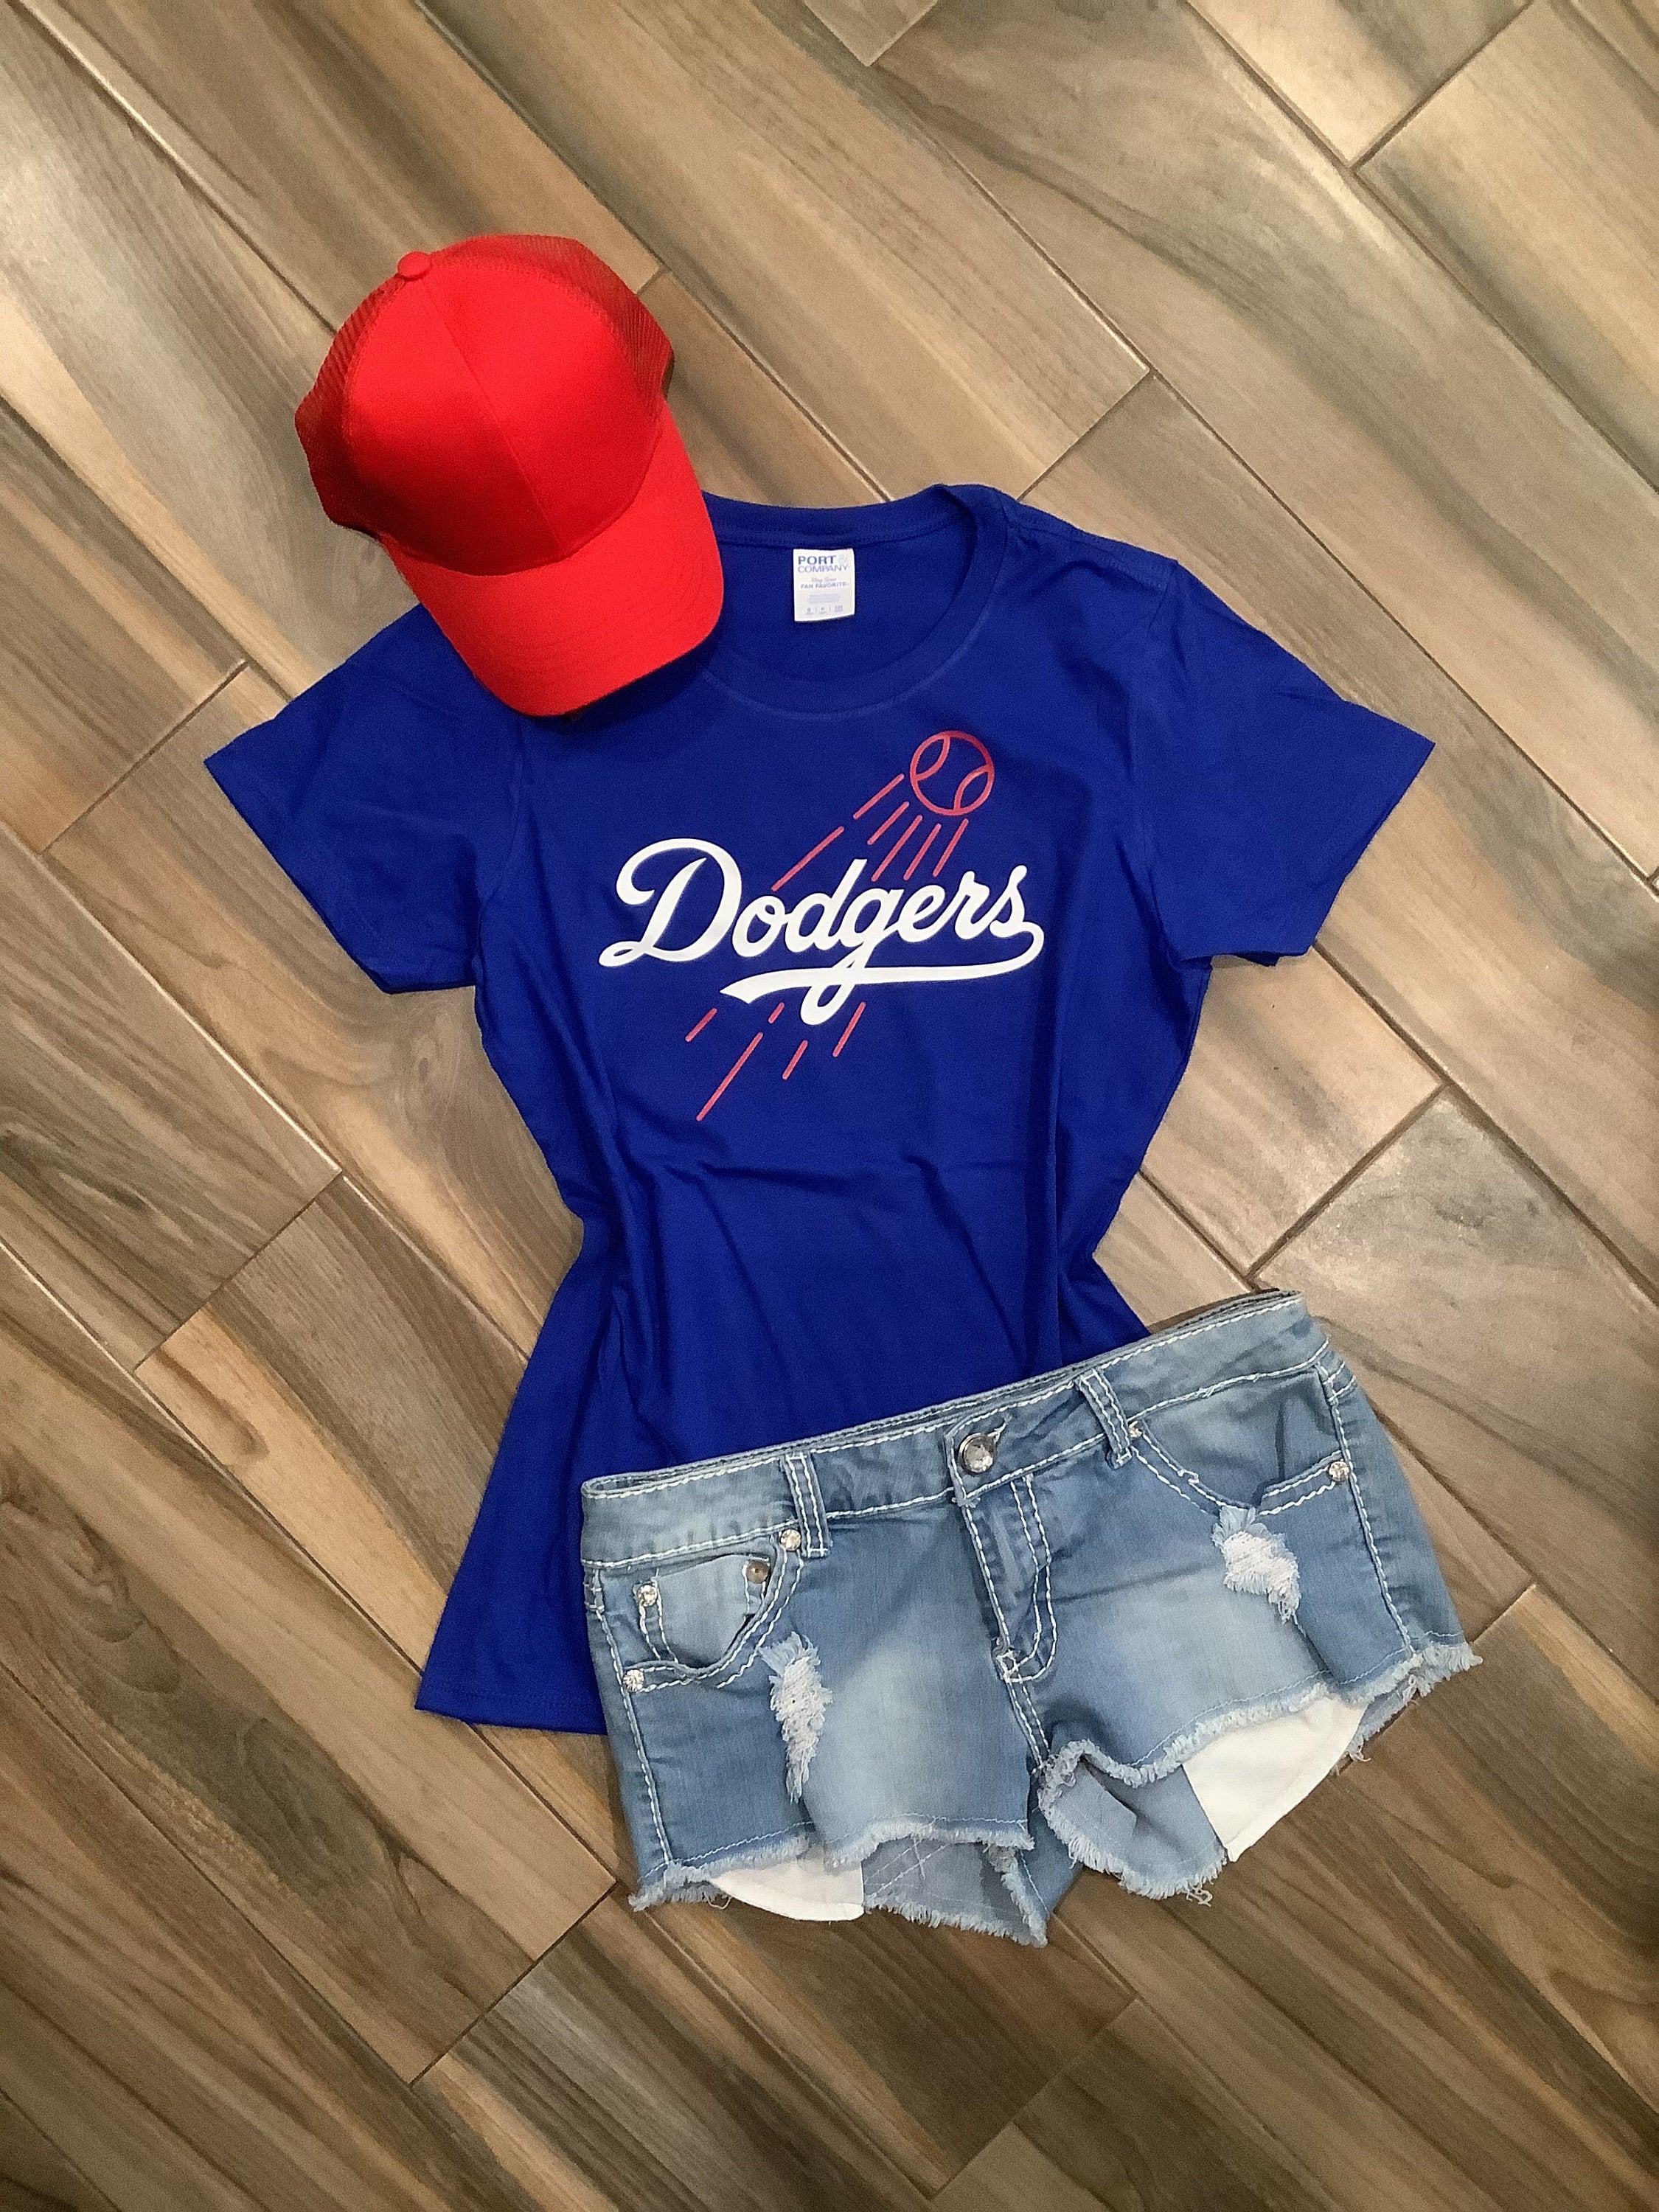 Womens Dodgers Shirt